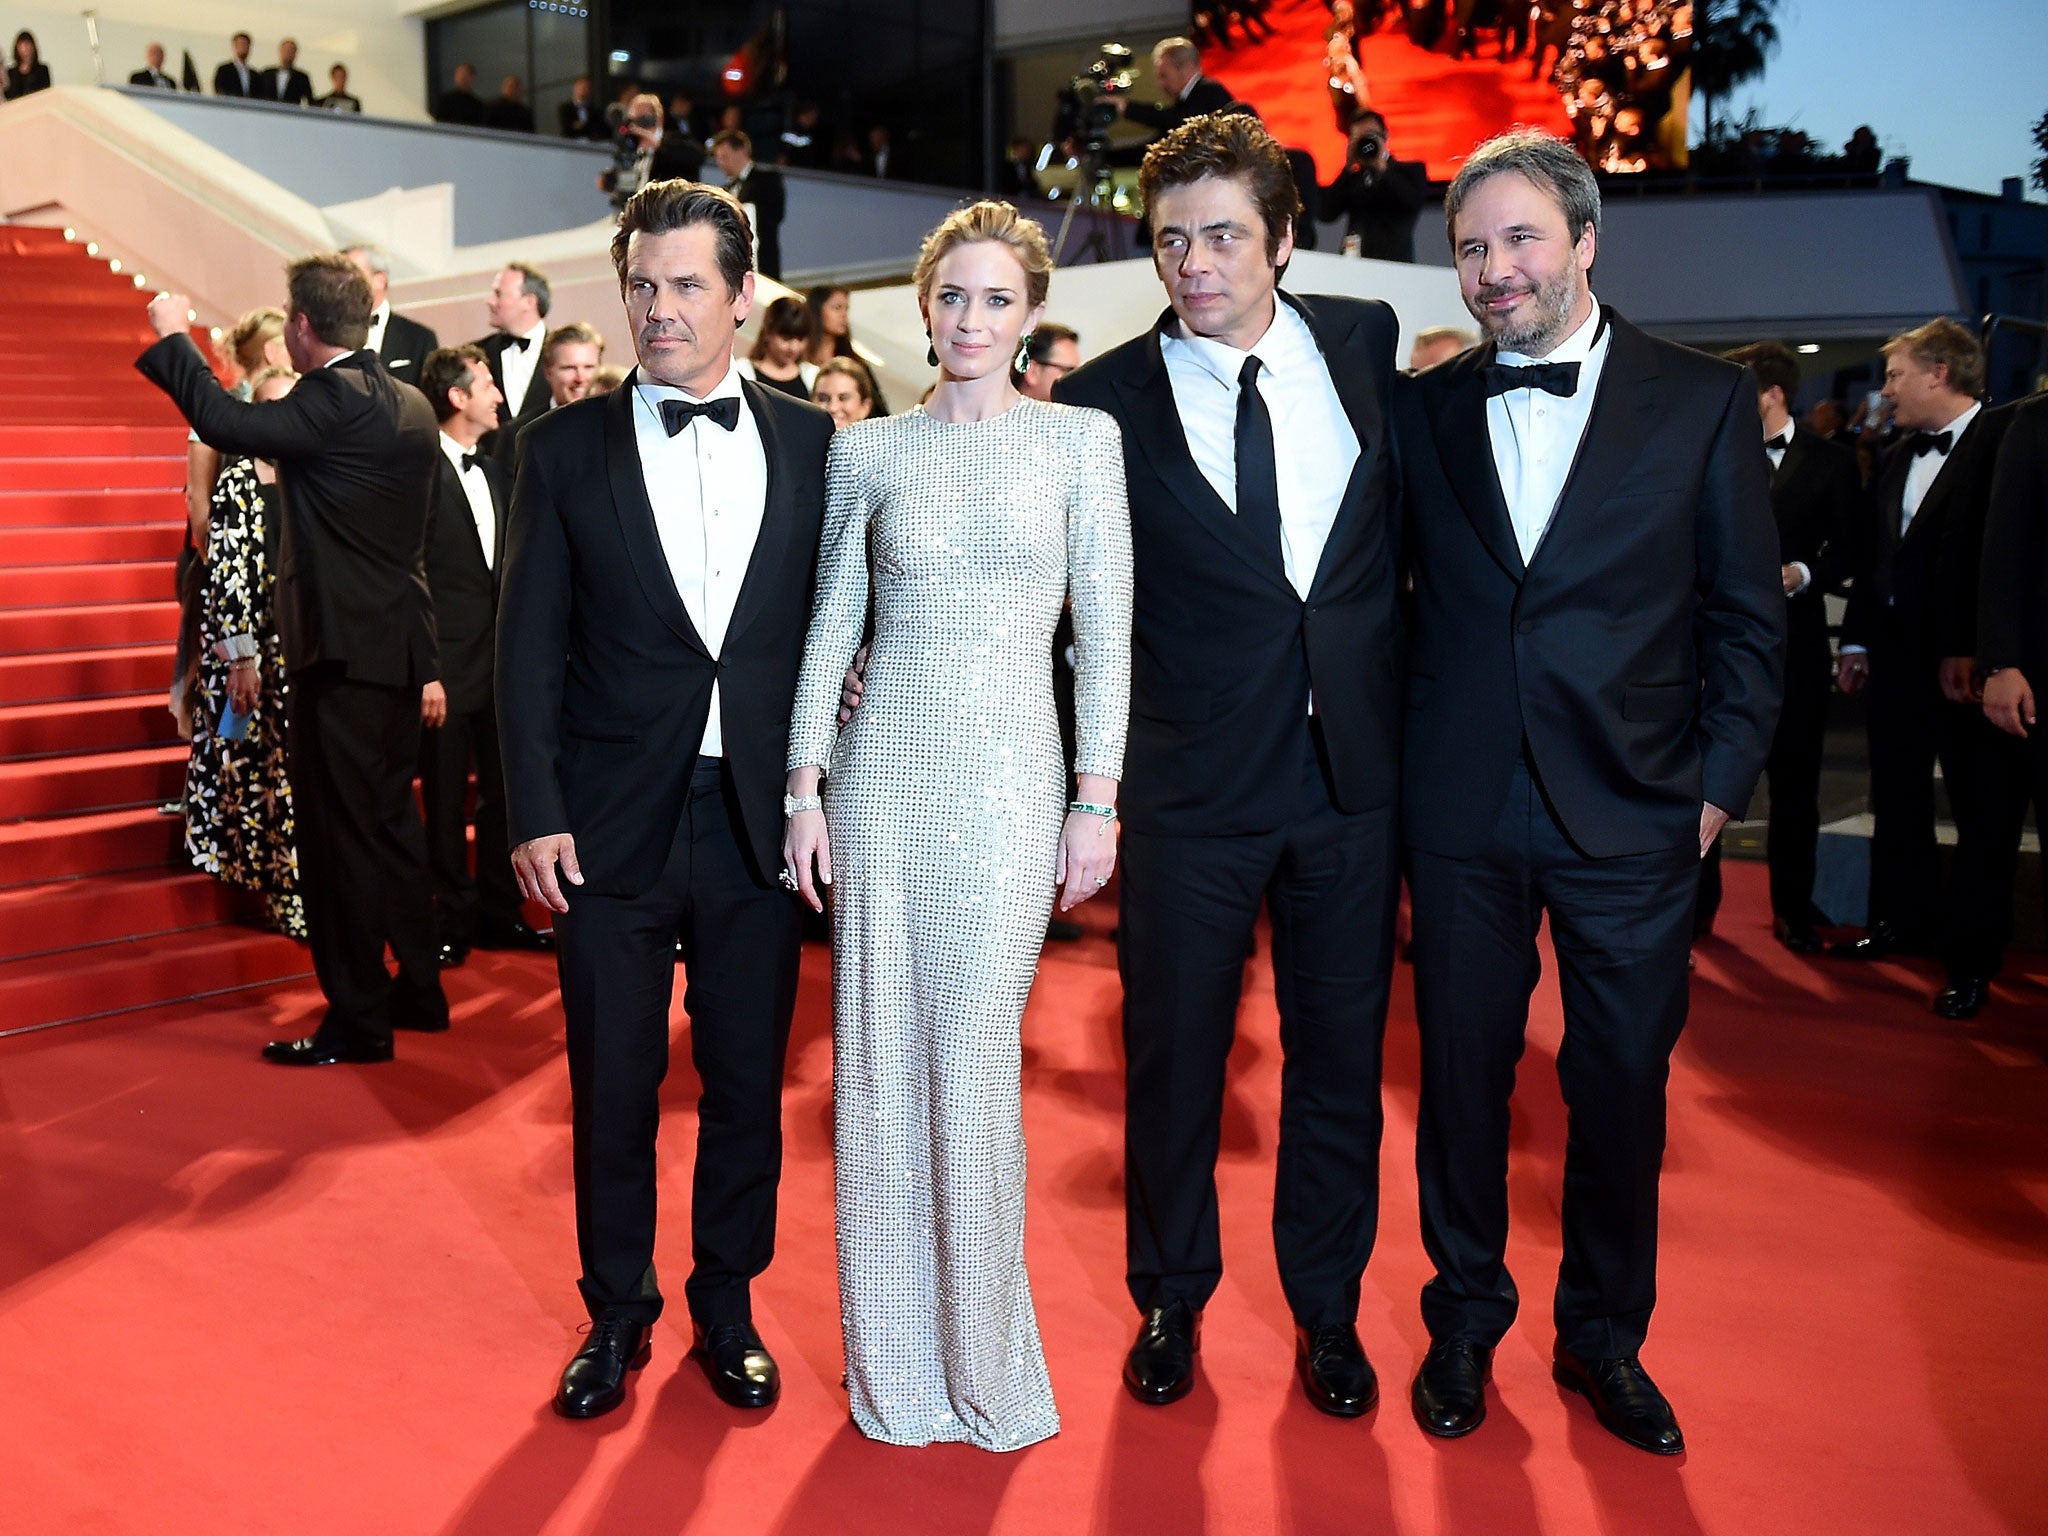 Josh Brolin, Emily Blunt, Benicio Del Toro and Denis Villeneuve arrive for the Sicario premiere at Cannes